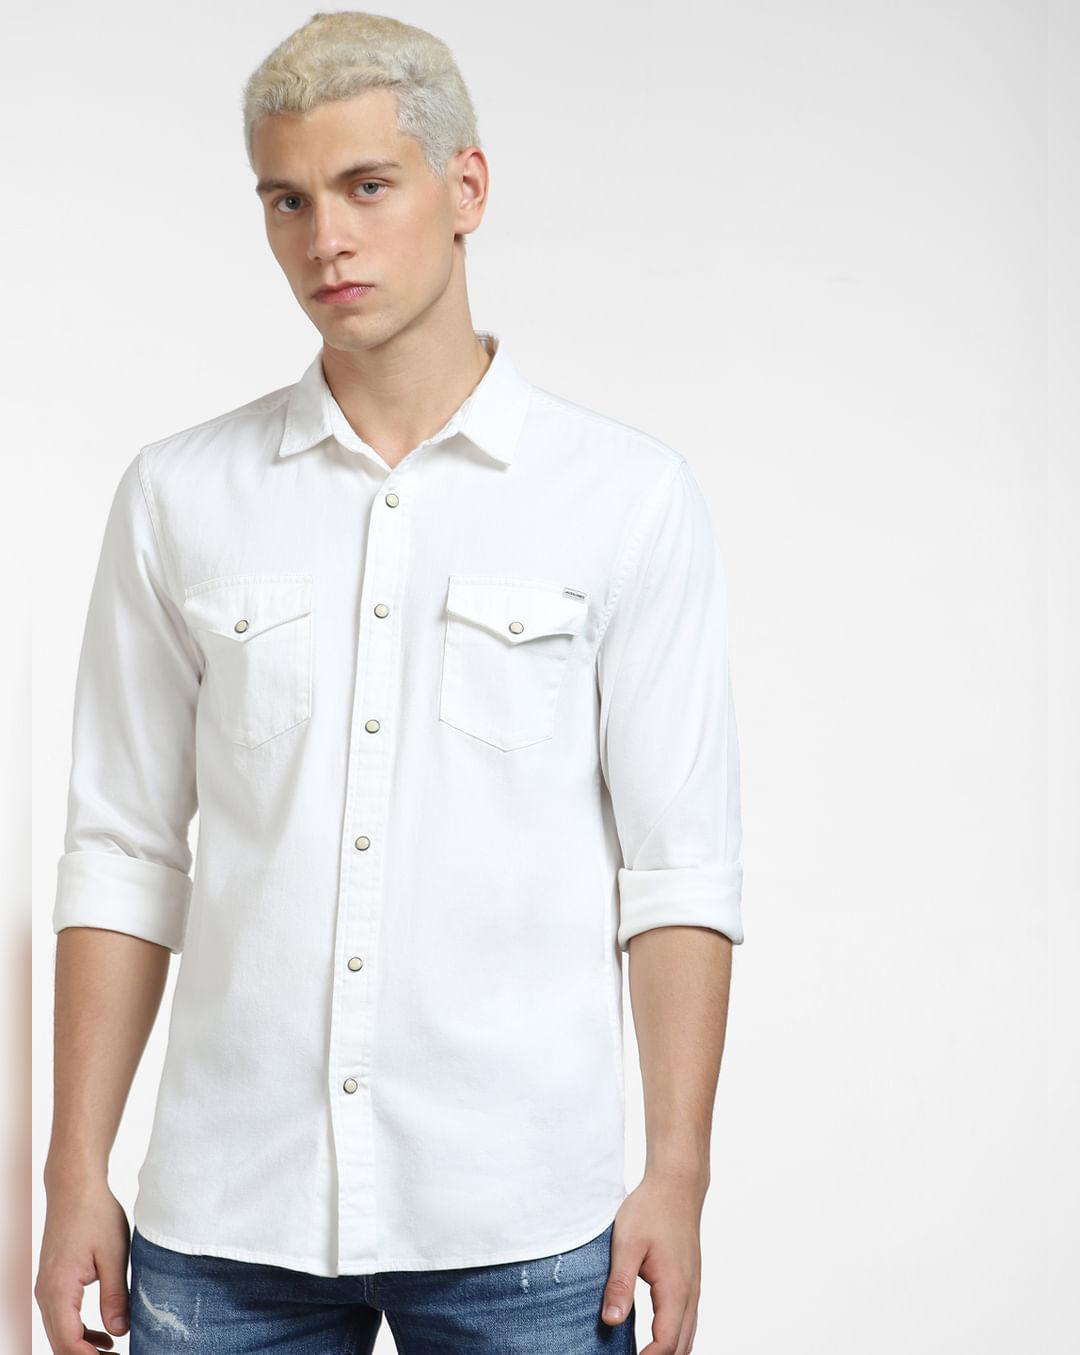 off-white denim full sleeves shirt